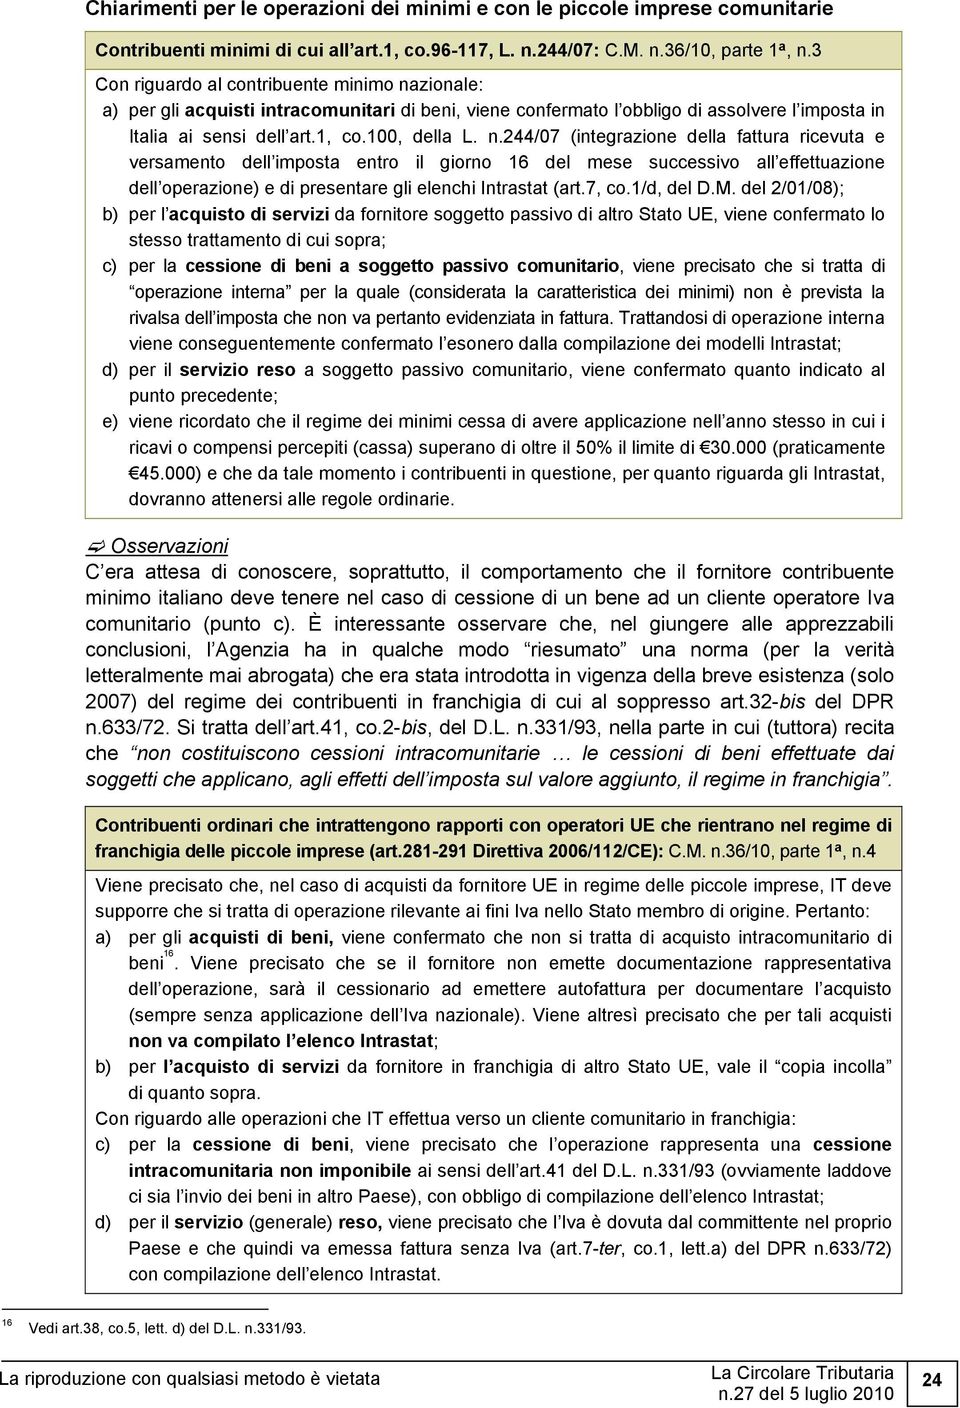 zionale: a) per gli acquisti intracomunitari di beni, viene confermato l obbligo di assolvere l imposta in Italia ai sensi dell art.1, co.100, della L. n.